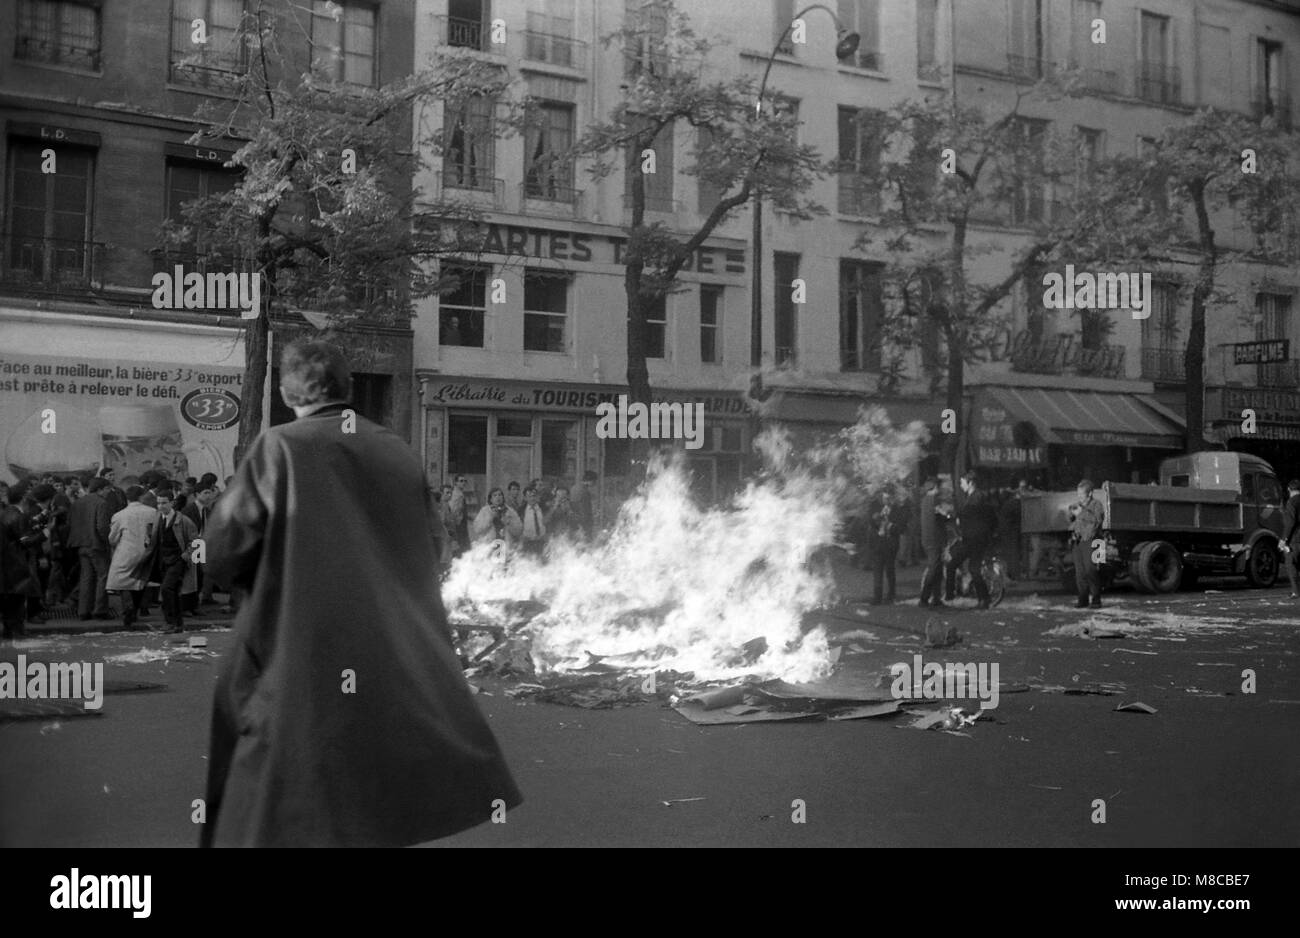 Philippe Gras / Le Pictorium -  May 1968 -  1968  -  France / Ile-de-France (region) / Paris  -  Bd.Saint-Germain at the rue de Seine protesters set fire to a barricade Stock Photo